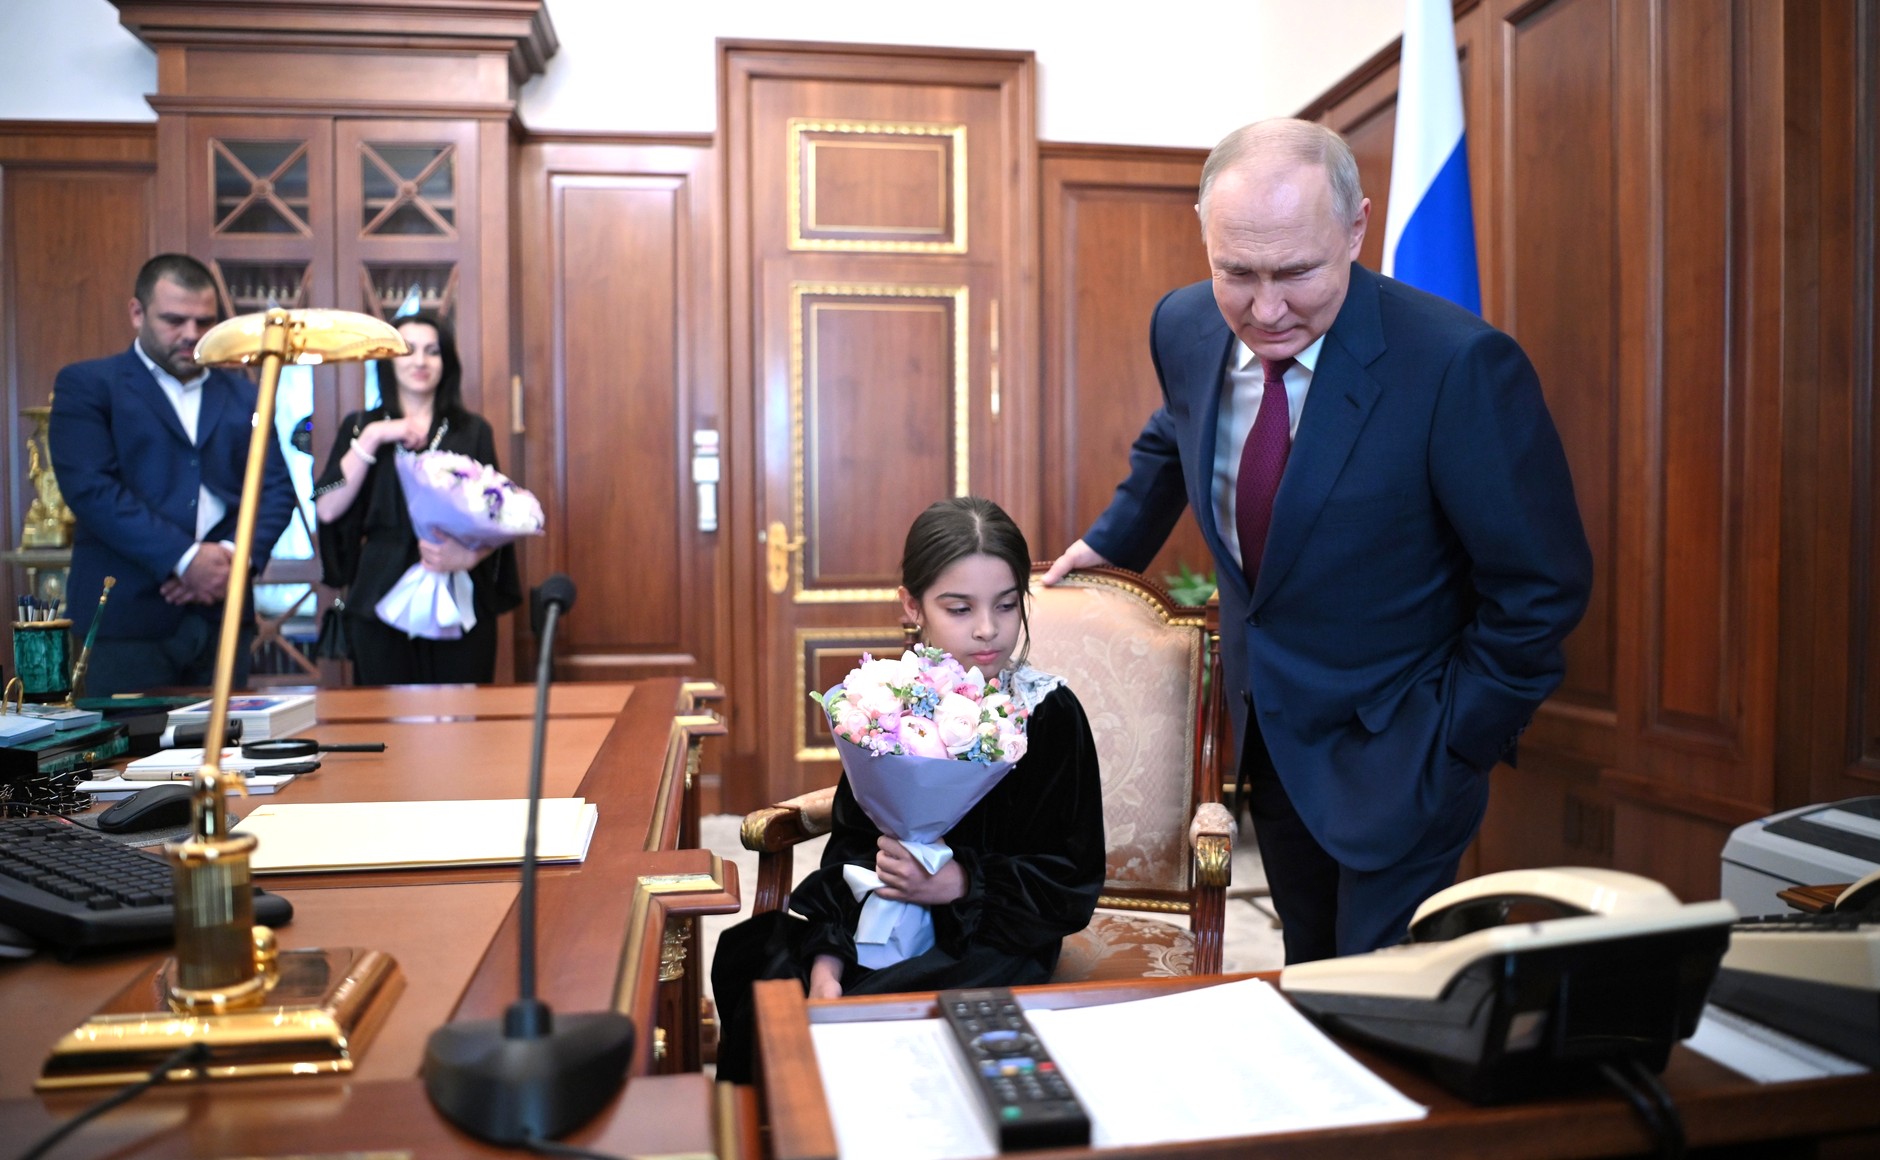 "Выпил даже валерьянки": Отец девочки из Дагестана раскрыл подробности встречи с Путиным